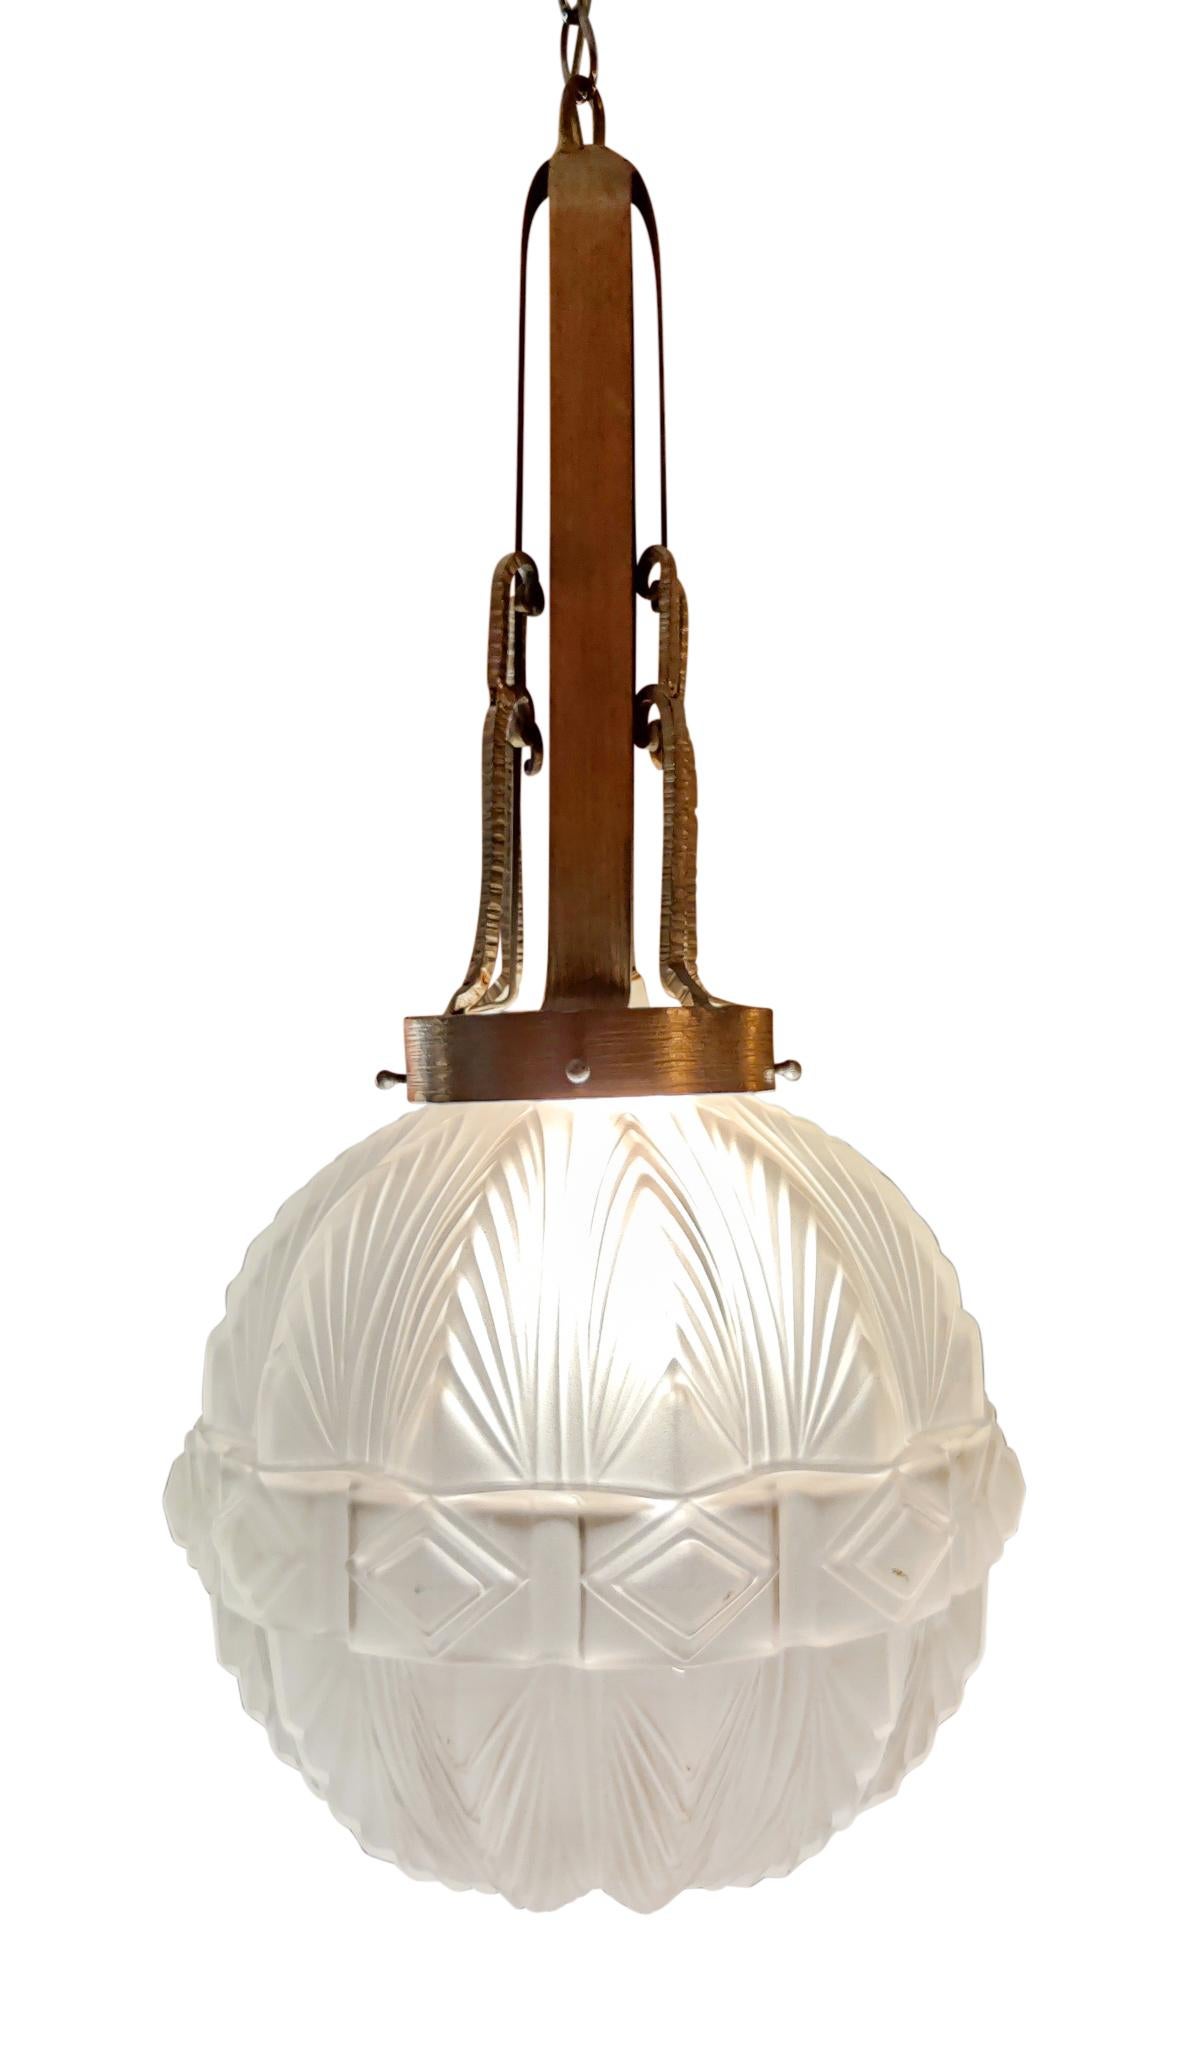 Eine schöne Sabino Attribution Art Deco Laterne Kronleuchter, Single-Sockel, Standard-Glühbirne, Wattleistung variabel, fest verdrahtet, und bereit für den Einsatz. Die matte Glaskugel ist frei von Brüchen und Reparaturen und hat bei normalem